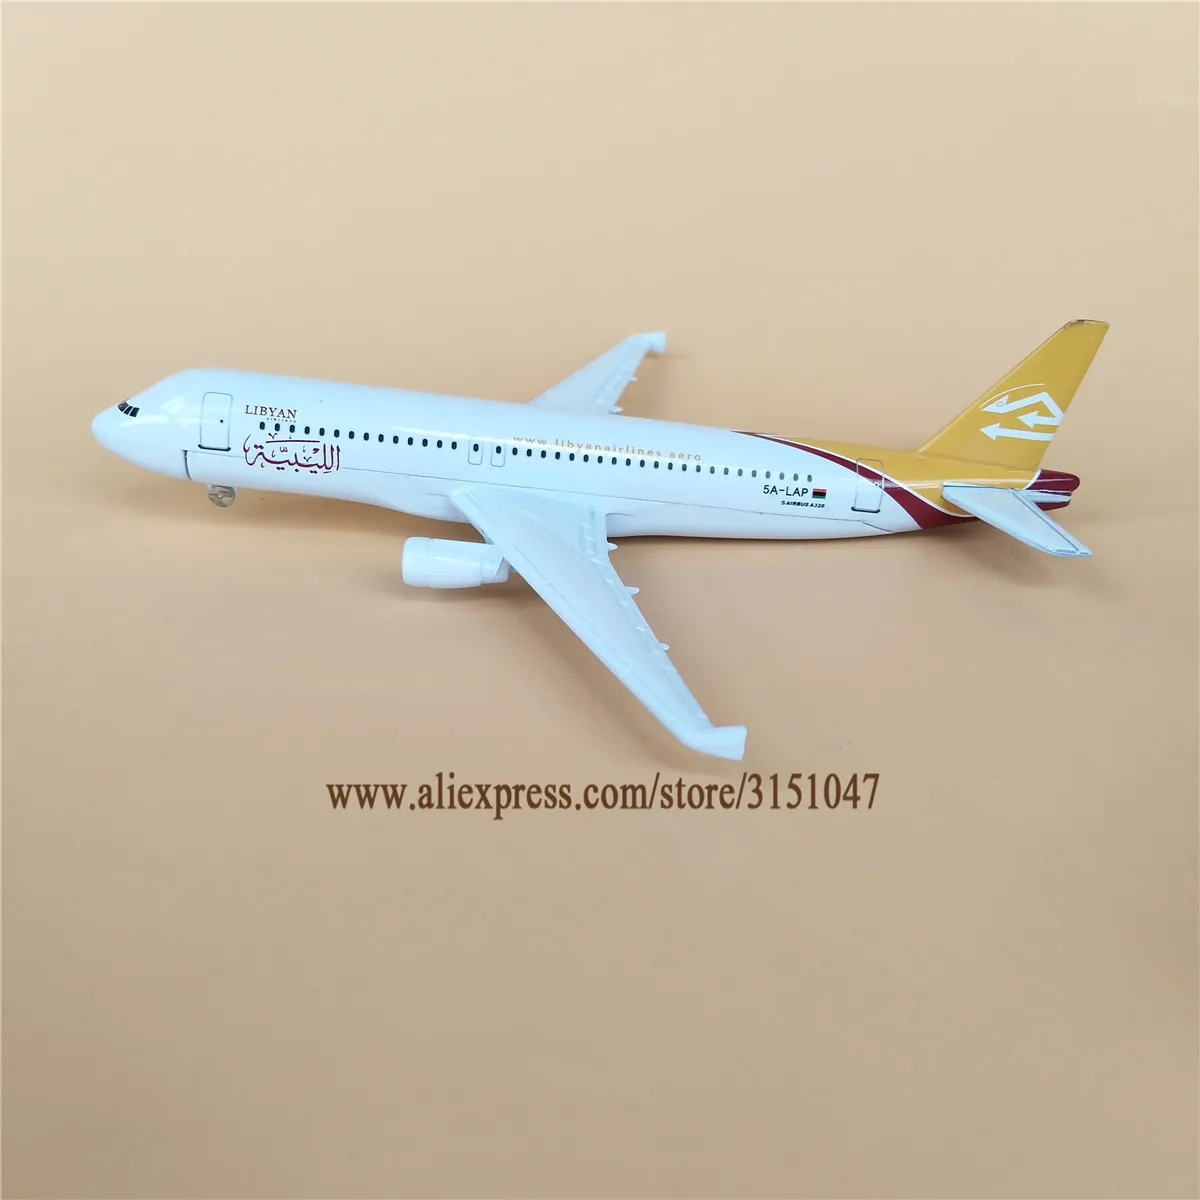 NUEVA Aleación de Metal Aérea de LIBIA Airlines, Avión Modelo Airbus 320 A320 Airways Modelo de Avión Stand de la Aeronave a los Niños los Regalos de 16cm 1